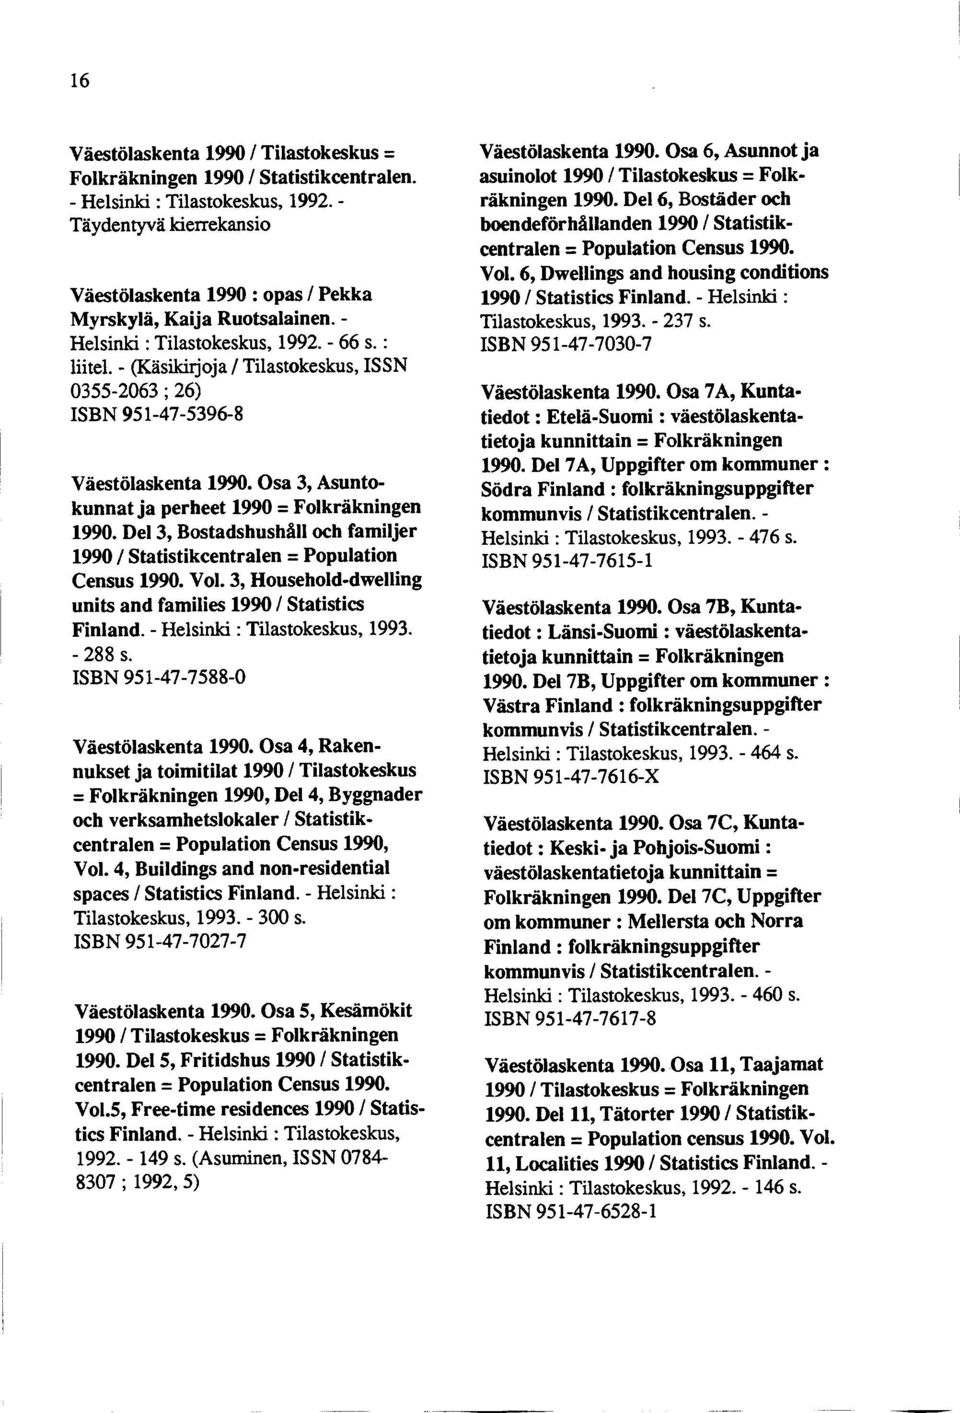 - (Käsikirjoja / Tilastokeskus, ISSN 0355-2063 ; 26) ISBN 951-47-5396-8 Väestölaskenta 1990. Osa 3, Asuntokunnat ja perheet 1990 = Folkräkningen 1990.